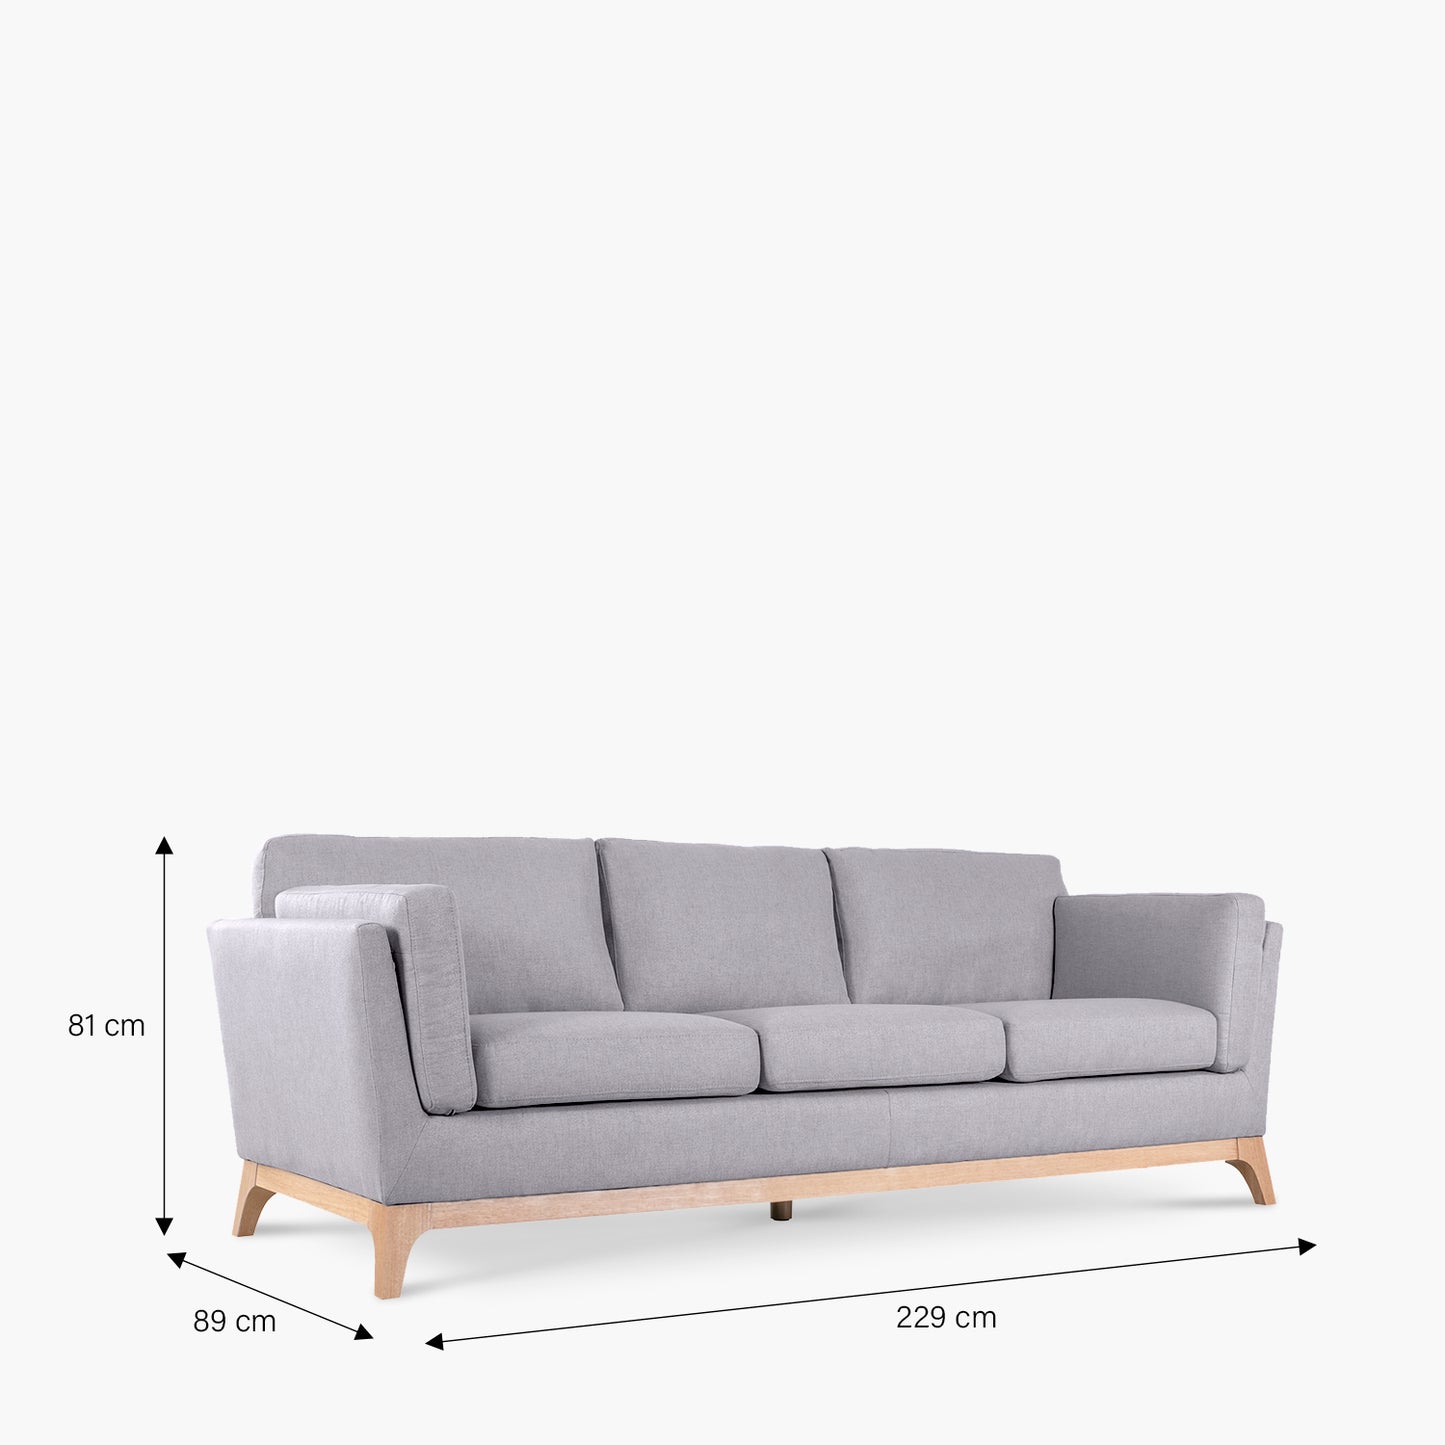 sofa-3c-paul-acero